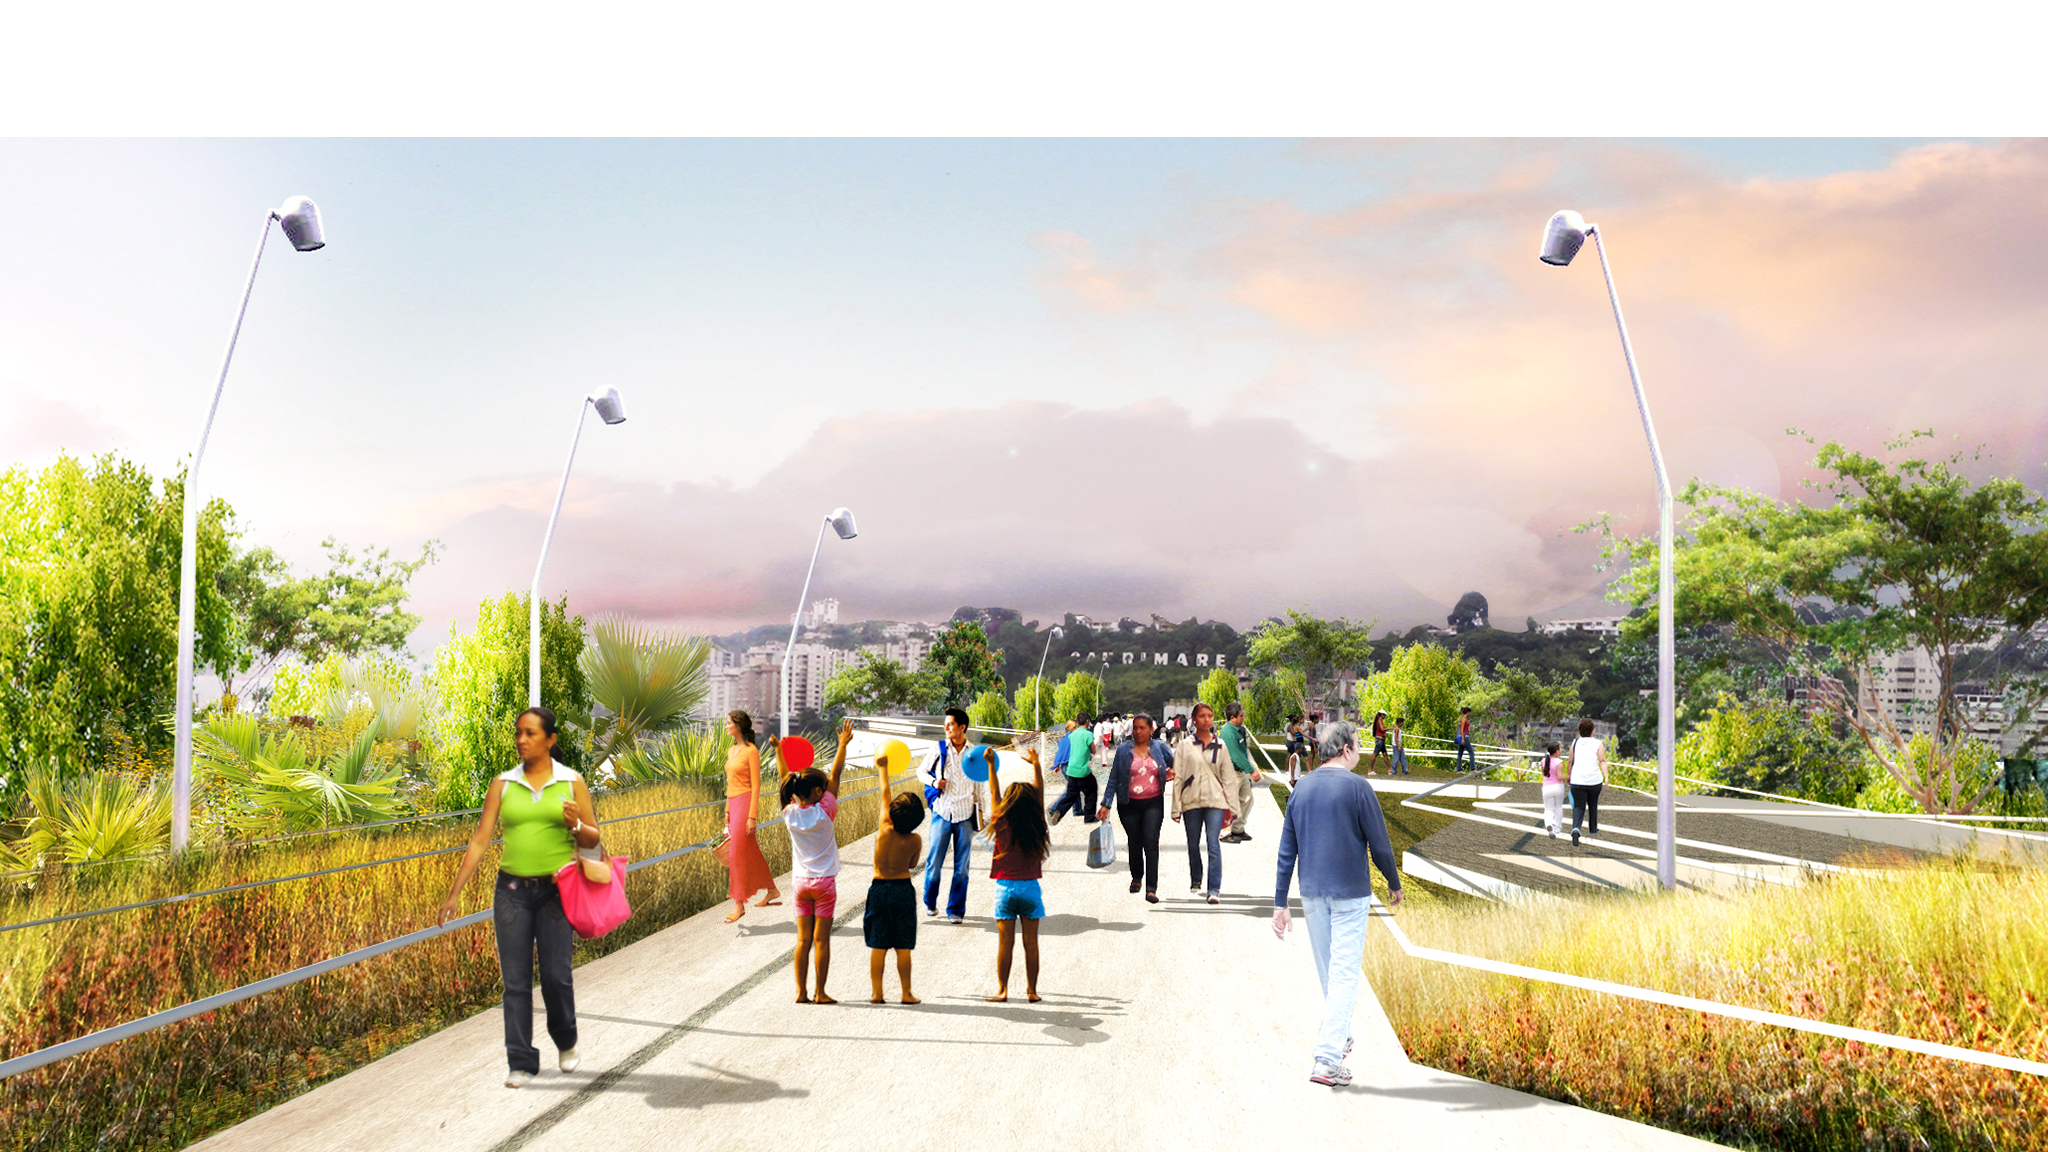 Concurso público de ideas para transformar la Base Aérea en Parque Verde Metropolitano